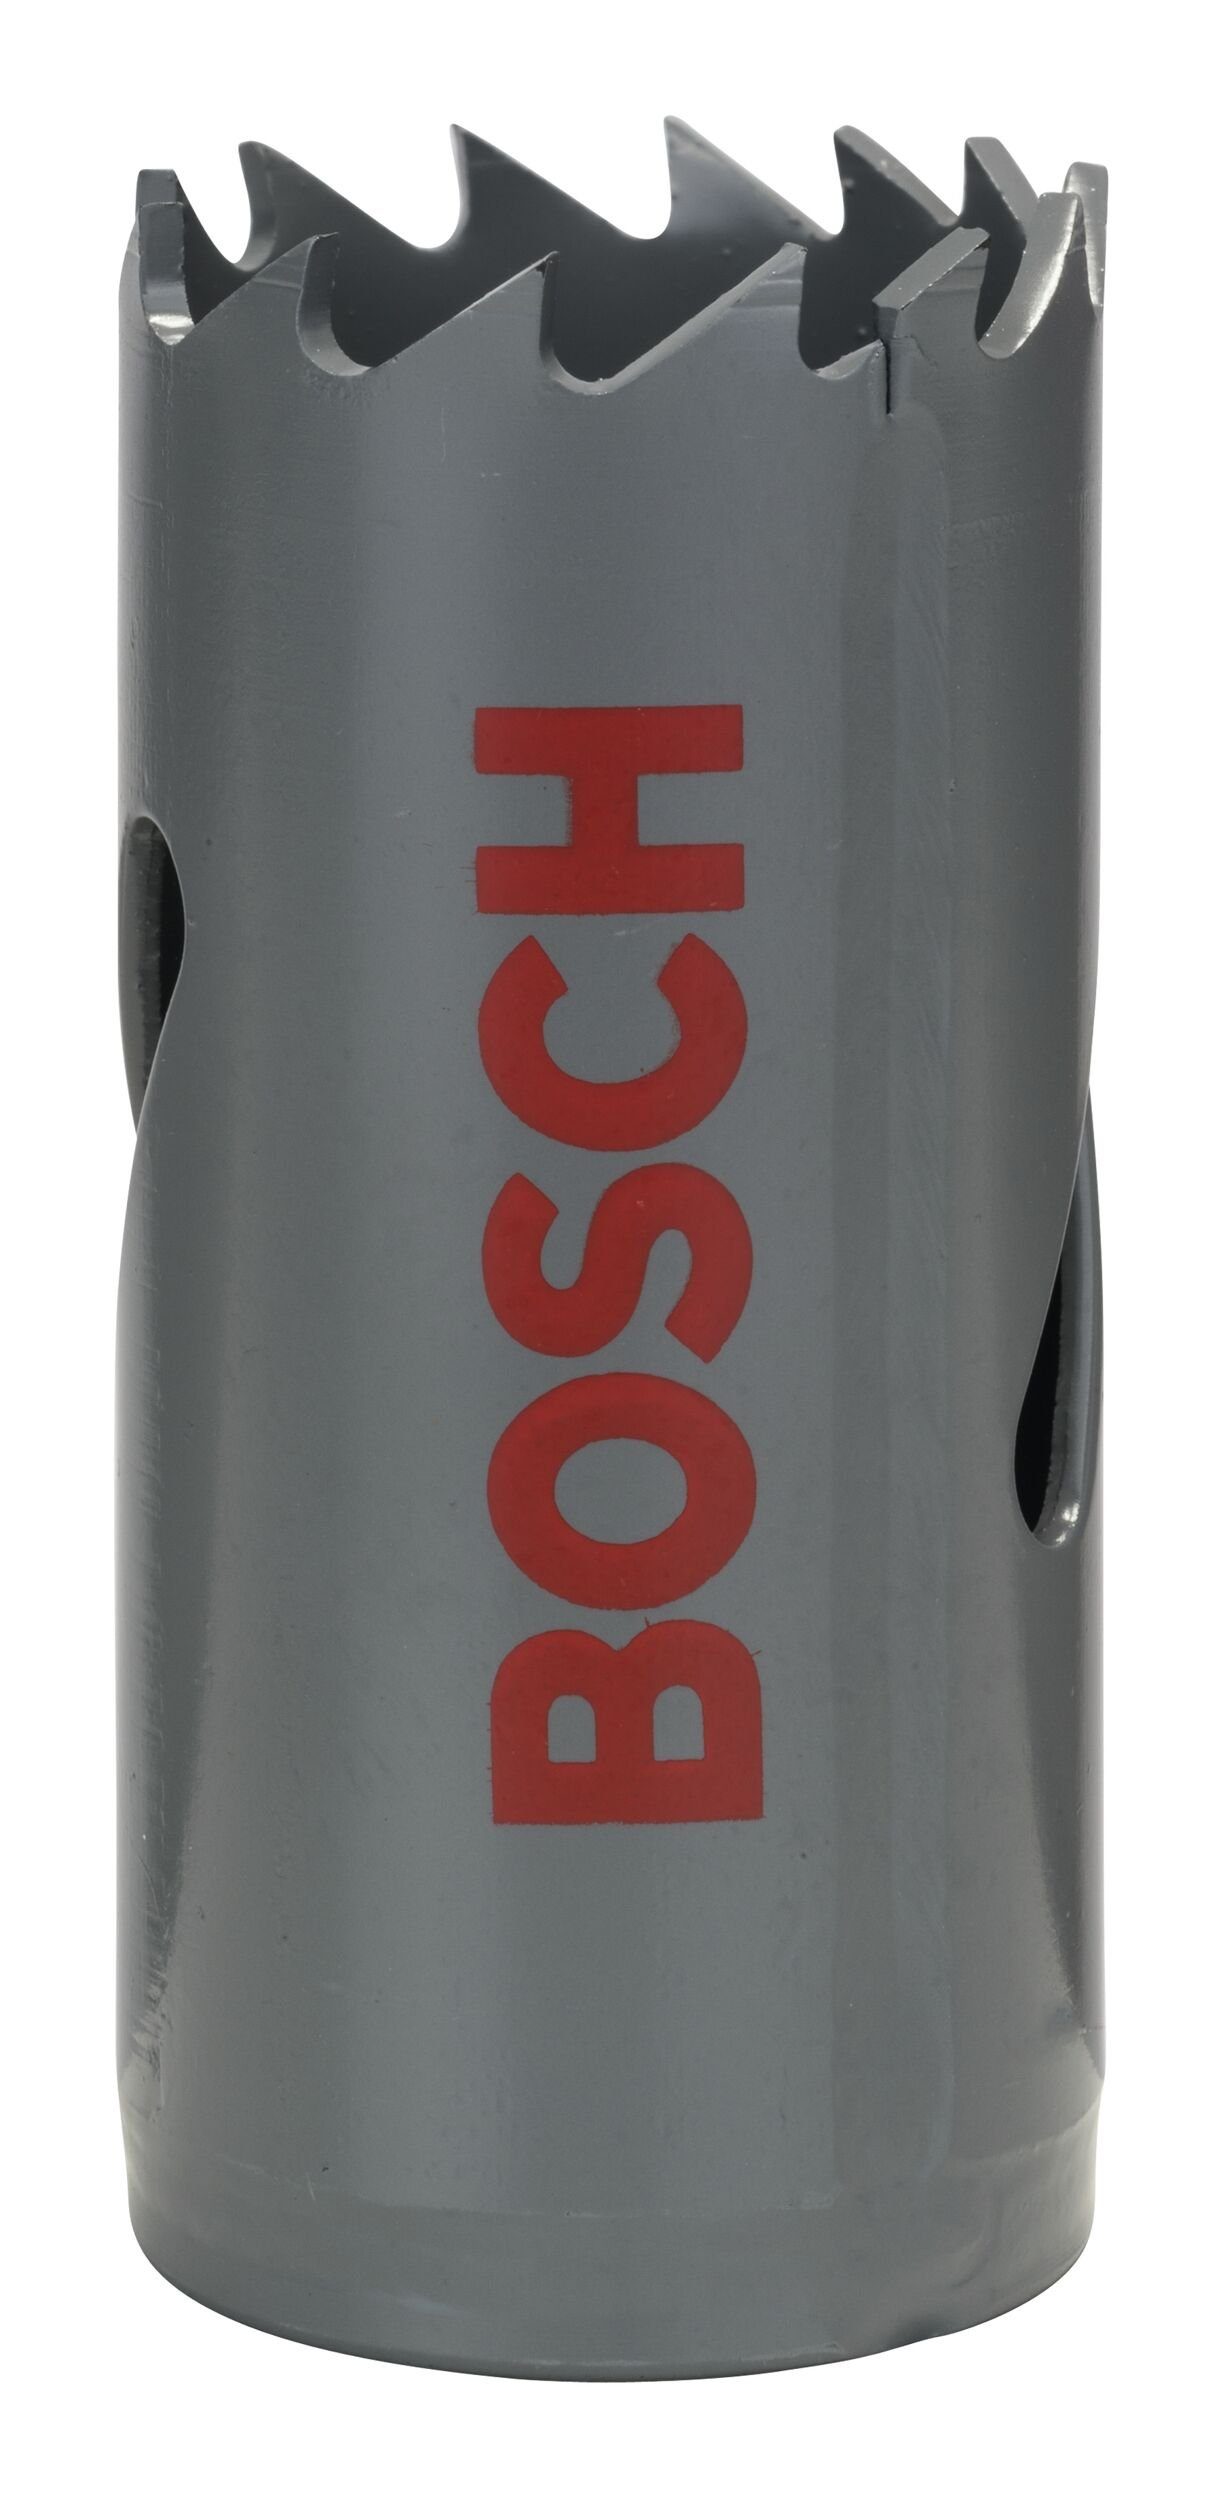 BOSCH Lochsäge, - HSS-Bimetall / 1" mm, 25 für Standardadapter Ø